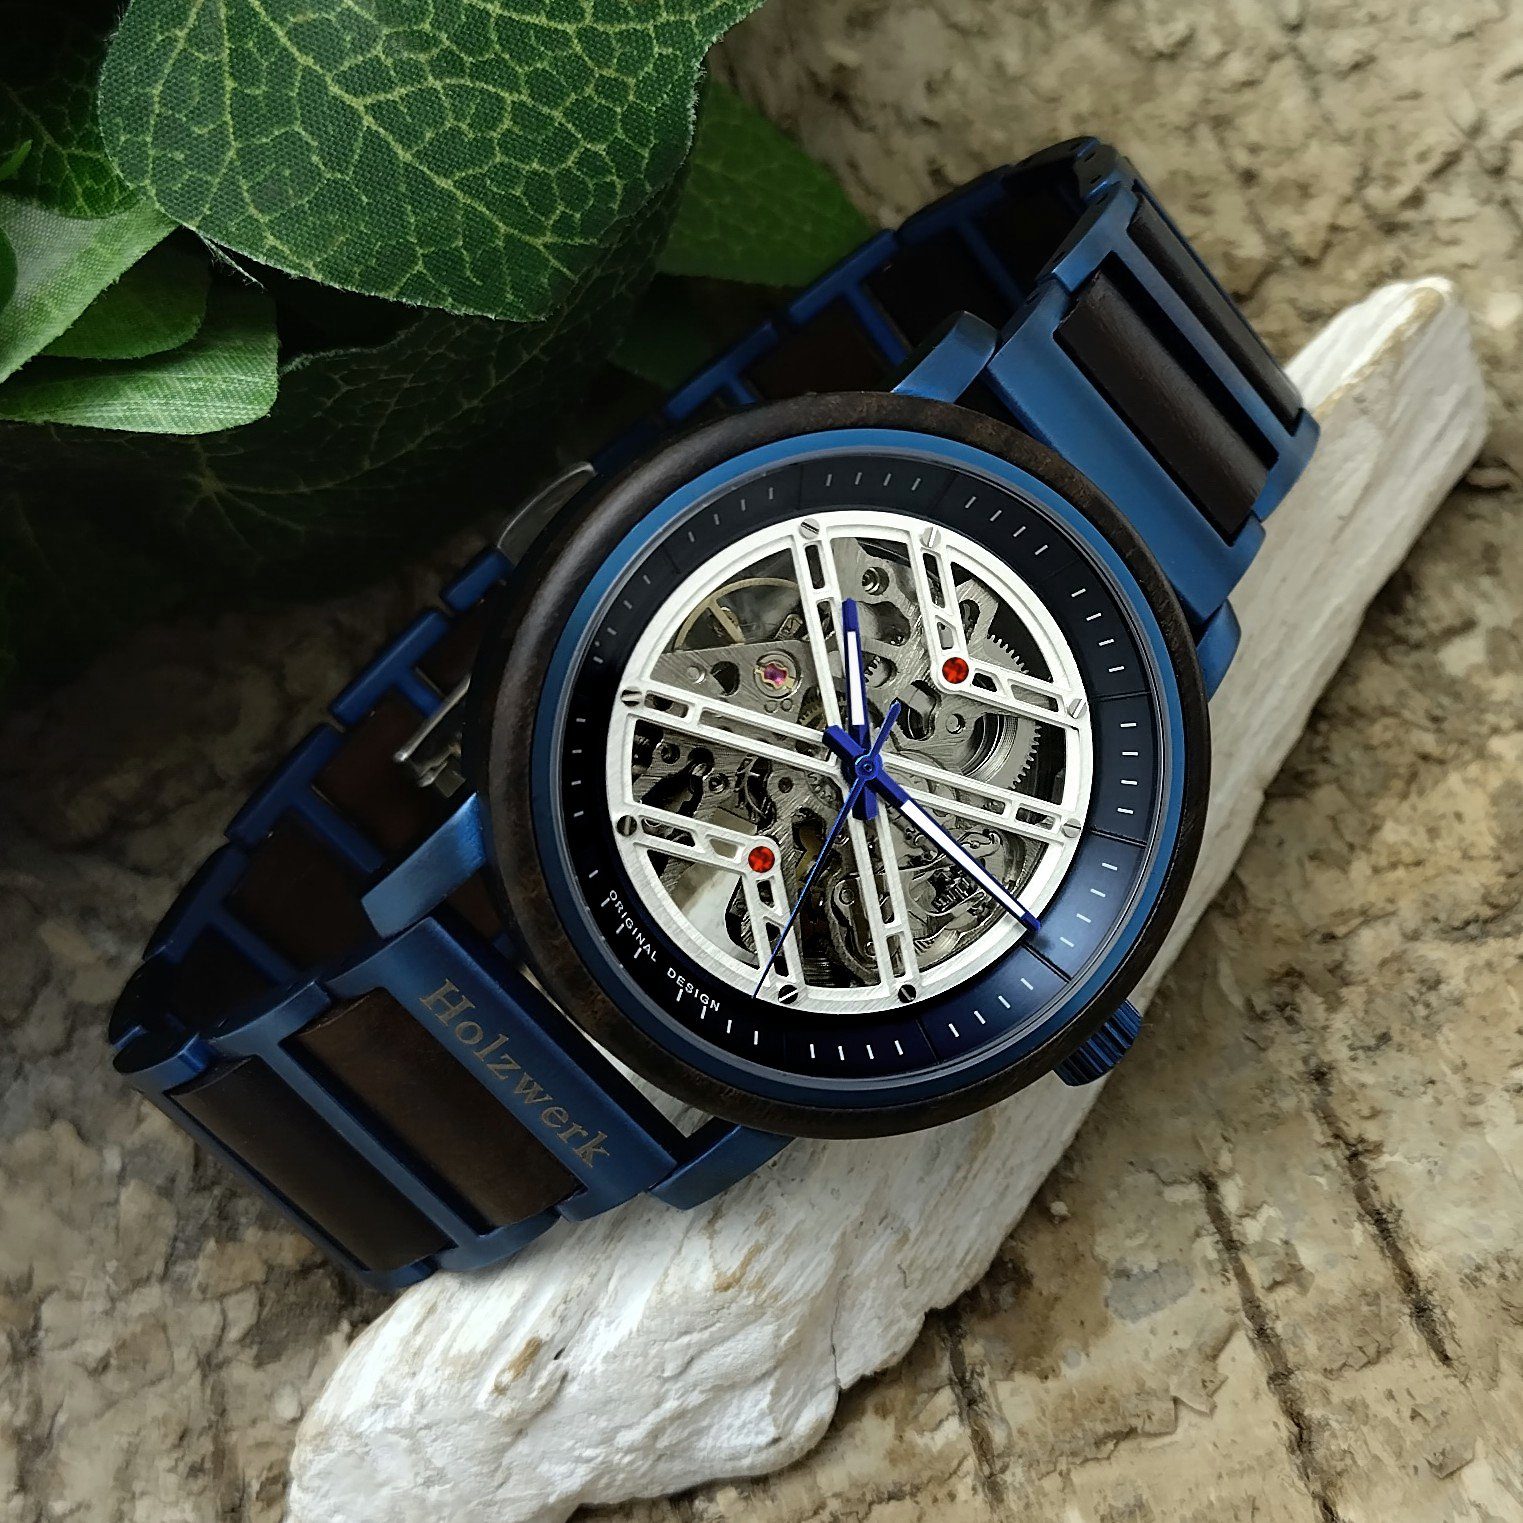 Holzwerk Automatikuhr COLDITZ Herren Edelstahl matt schwarz Holz & weiß, Armband Uhr, blau